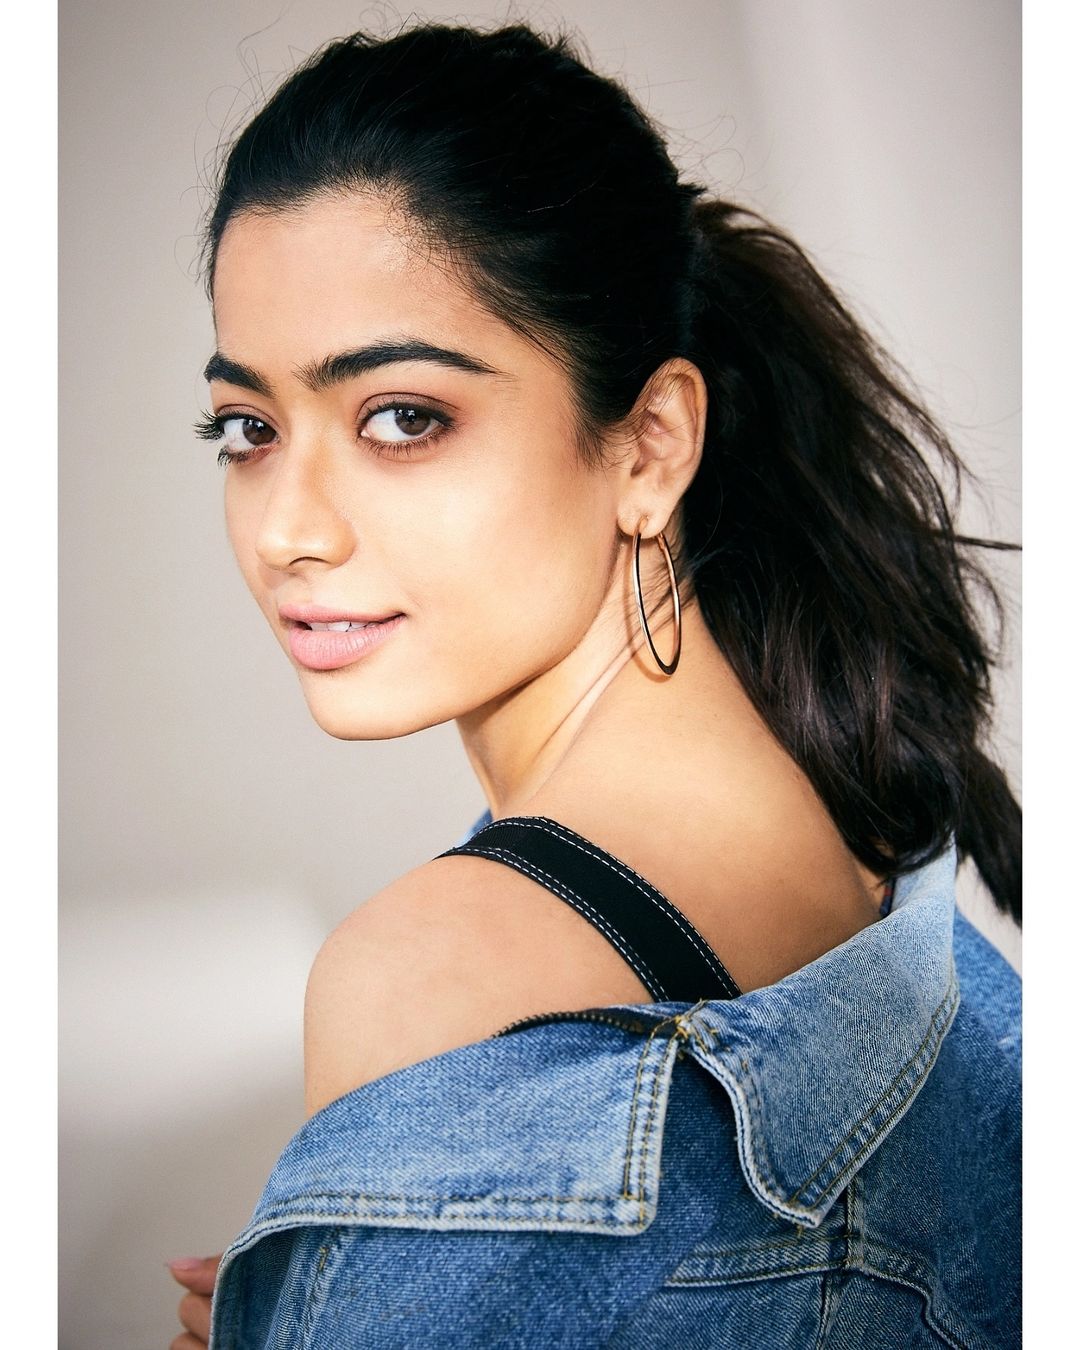  நடிகை ராஷ்மிகா மந்தனா ( Image : Instagram @rashmika_mandanna)